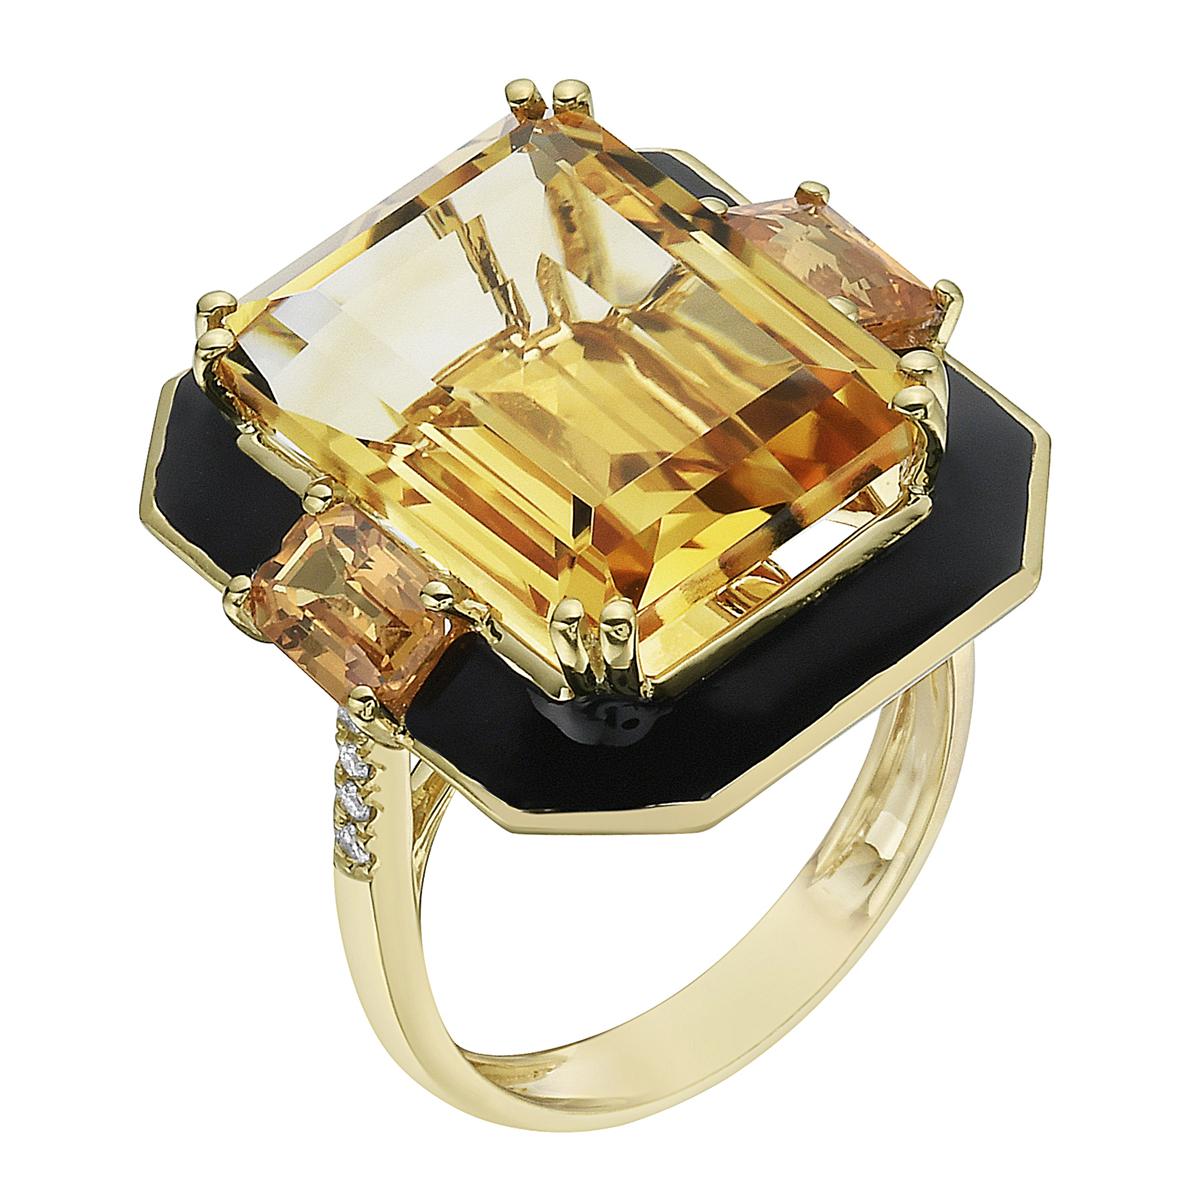 Avec cette exquise bague en or jaune à diamants et citrine semi-précieuse, le style et le glamour sont à l'honneur. Cette bague de 18 carats à taille d'émeraude est composée de 5,53 grammes d'or, de 3 citrines totalisant 12,78 carats, et est